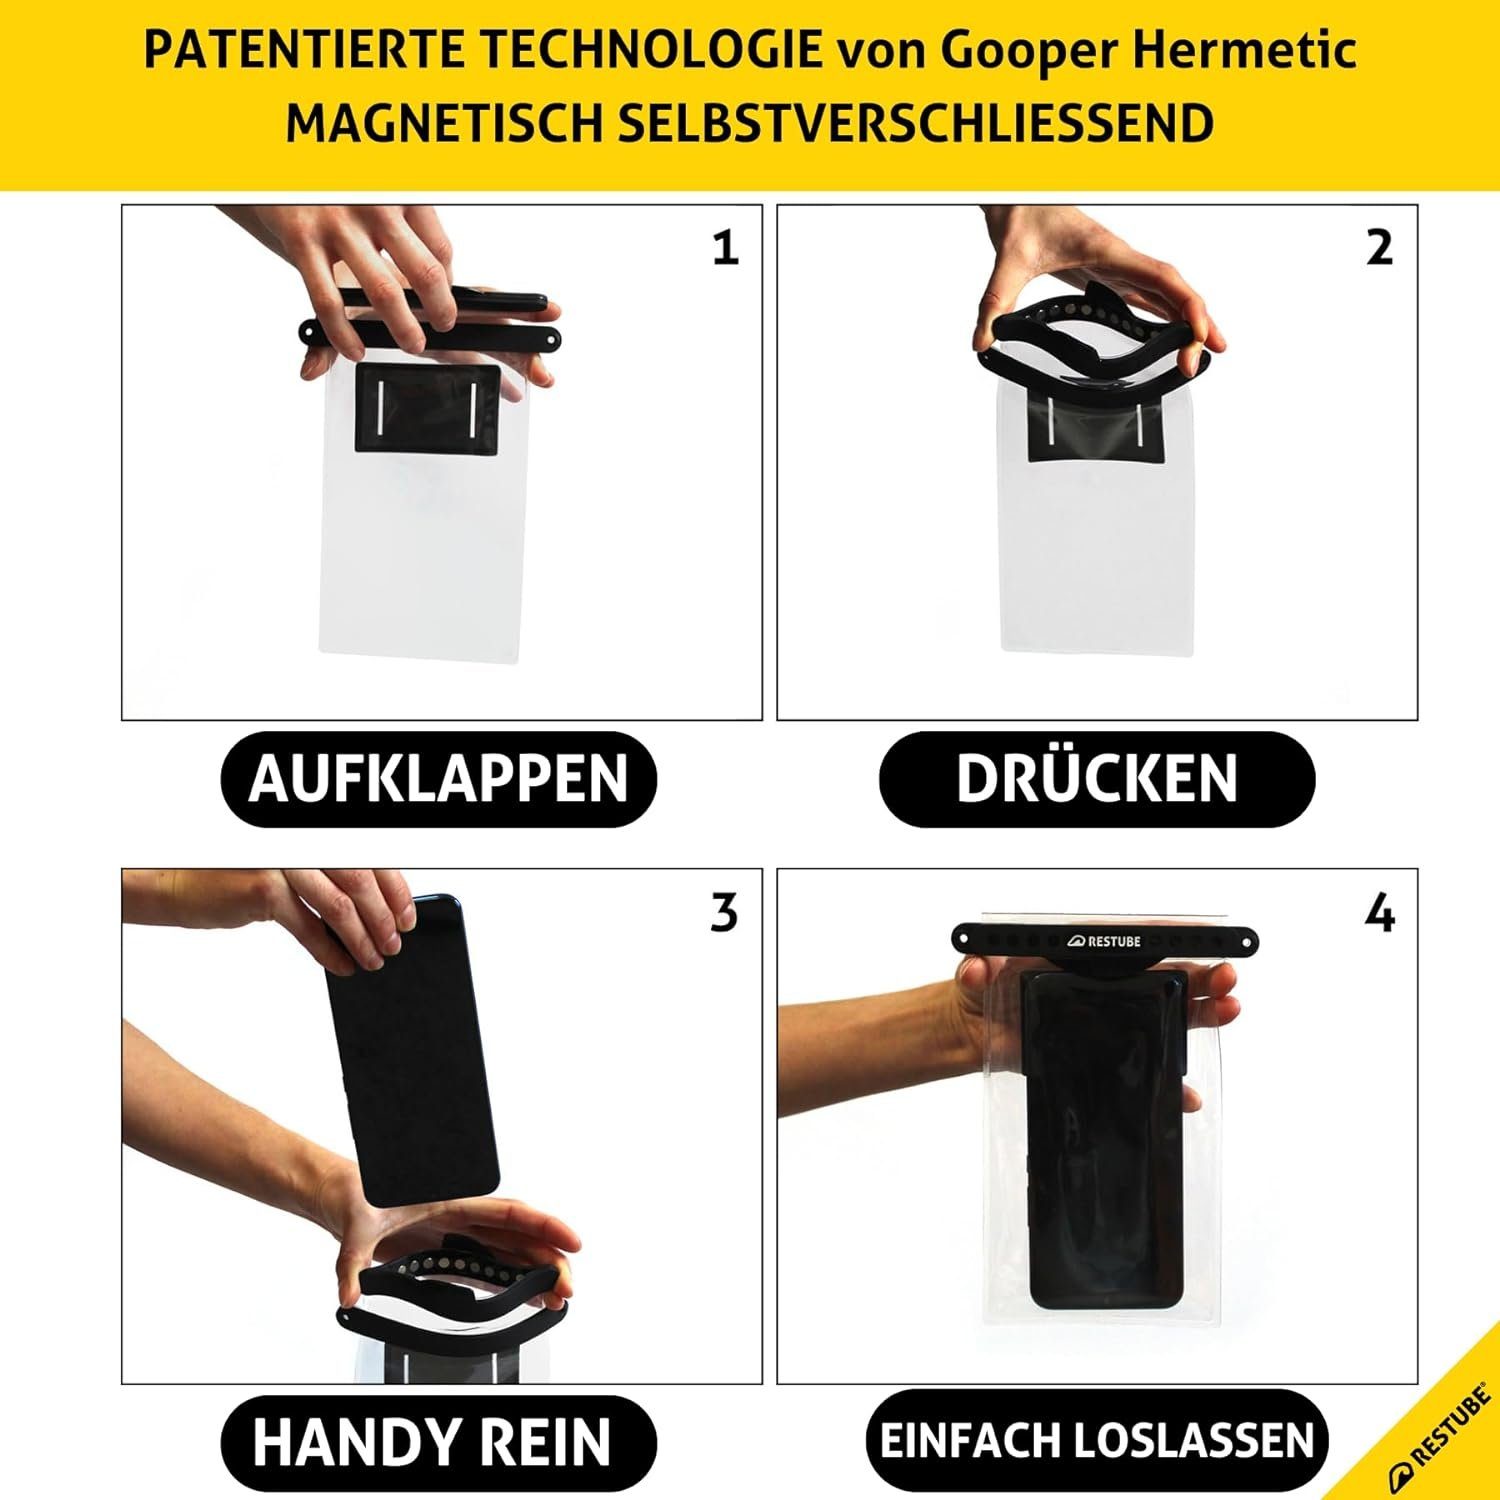 Magnetisch Fidlock, by schließend Handytasche Smartphone-Hülle Wasserdichte Restube RESTUBE &